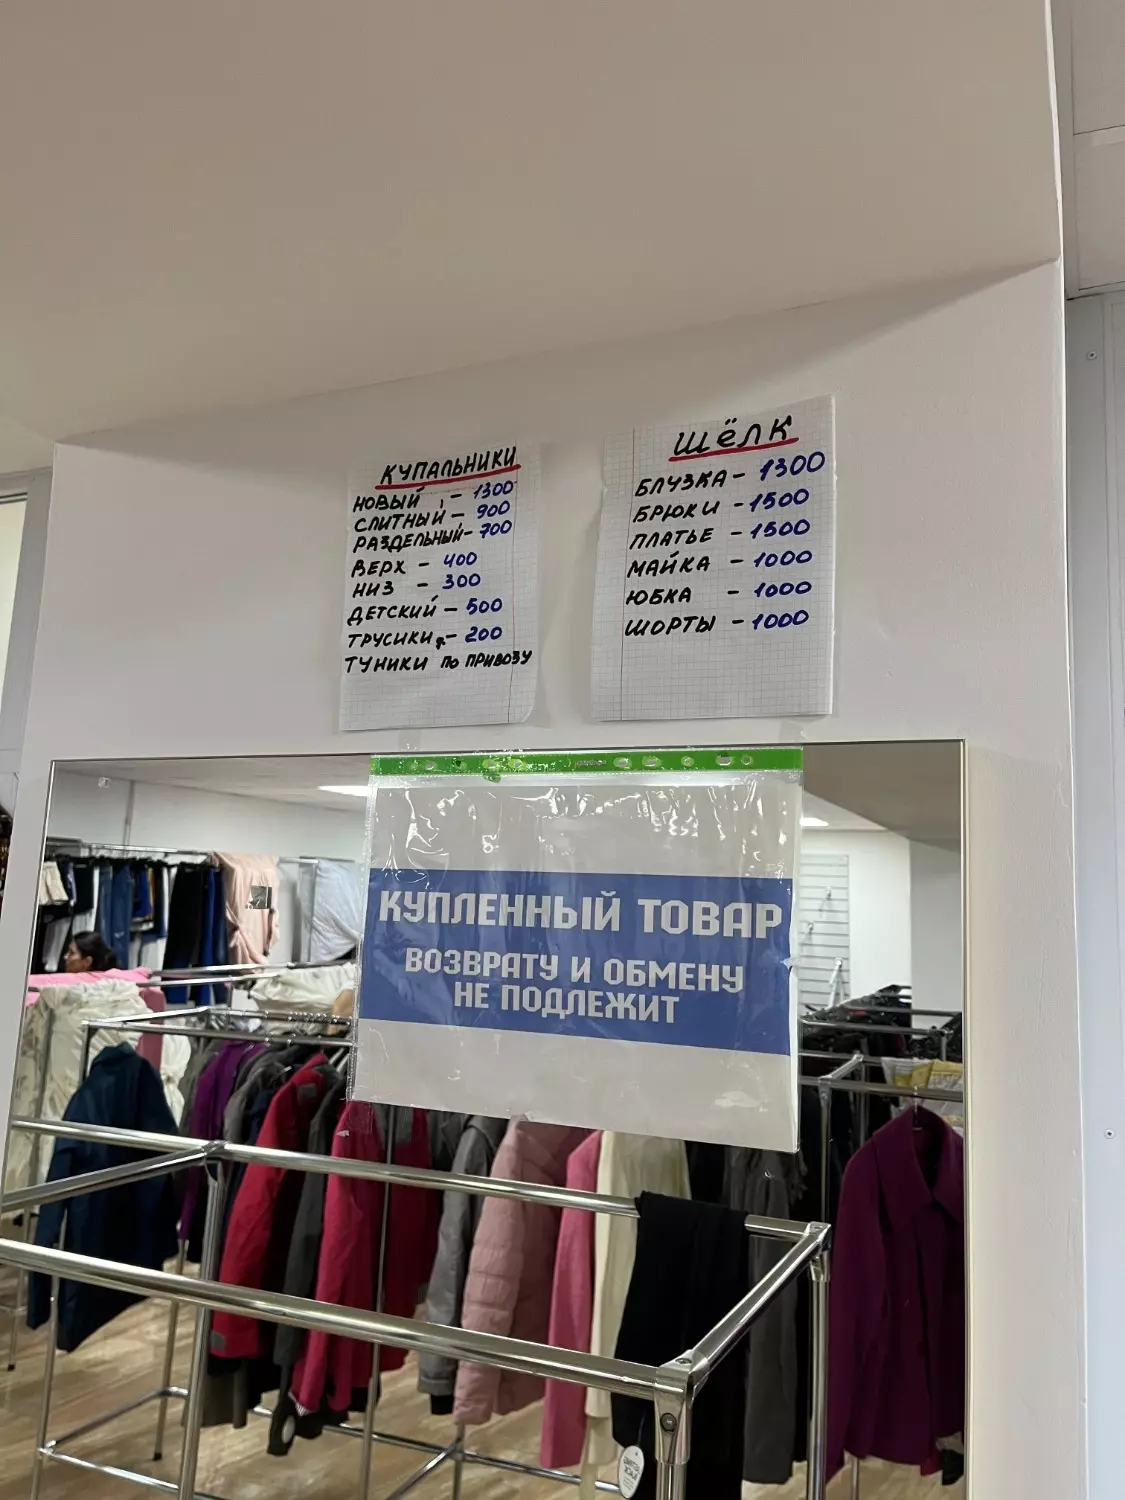 цены в белгородском секонд-хенде